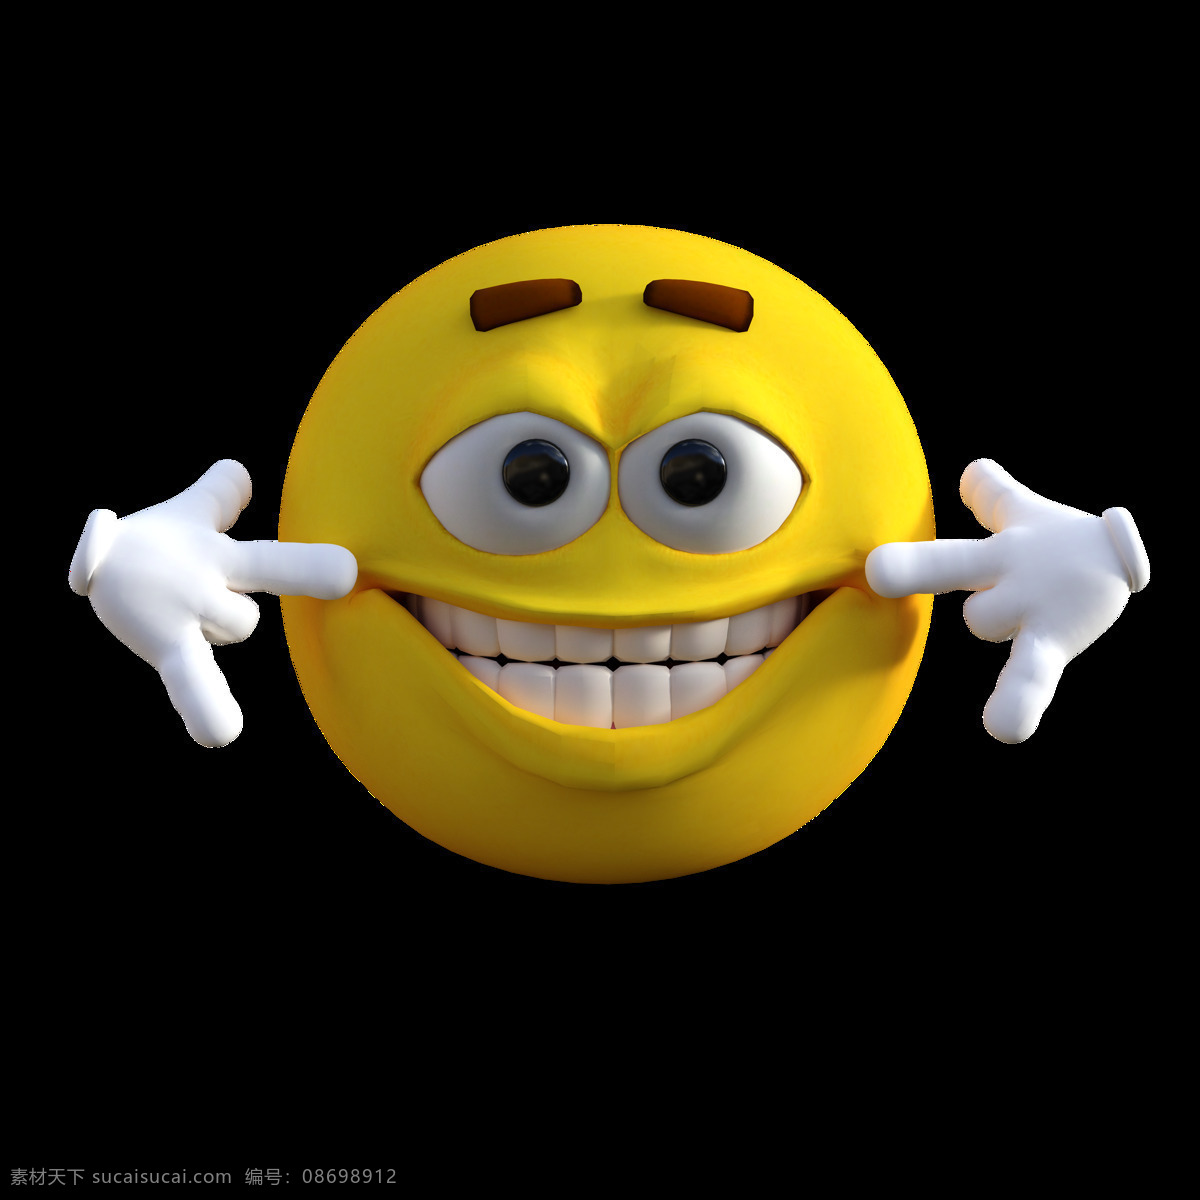 卡通 表情 笑脸 图释 表情符号 黄色 欢乐 快乐 微笑 脸 情感 搞笑 笑 幸福